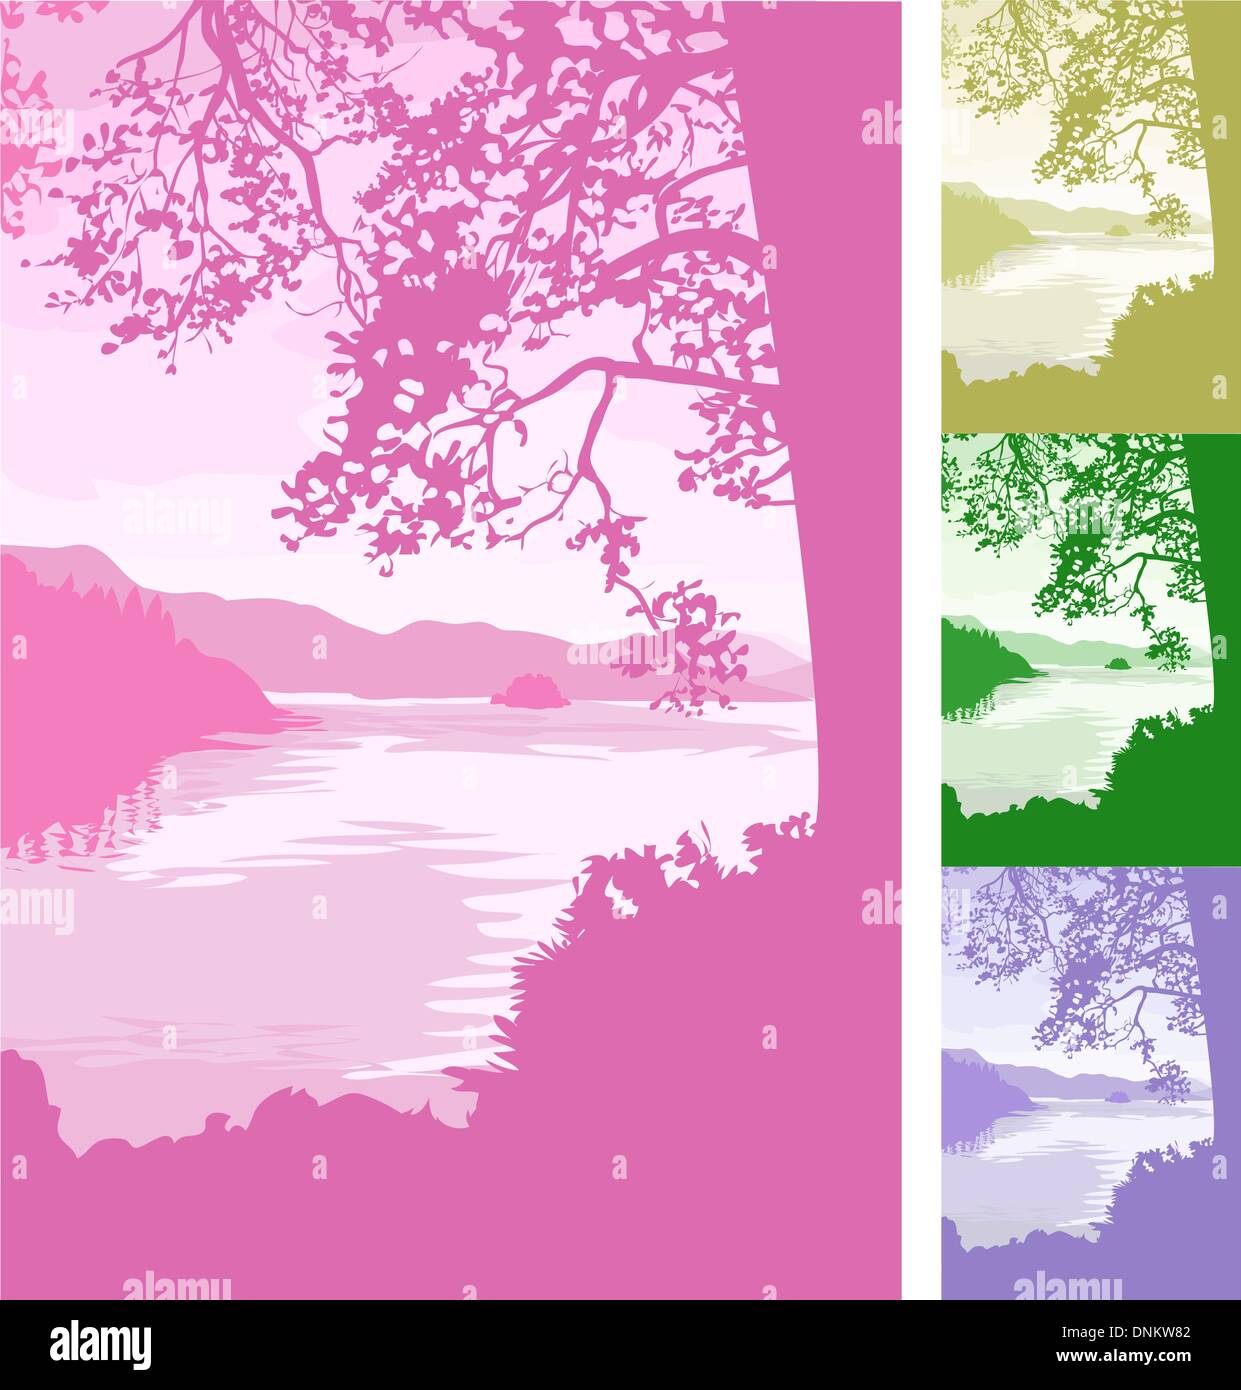 Un bellissimo lago sullo sfondo della scena. File vettoriale include diverse versioni di colore Illustrazione Vettoriale